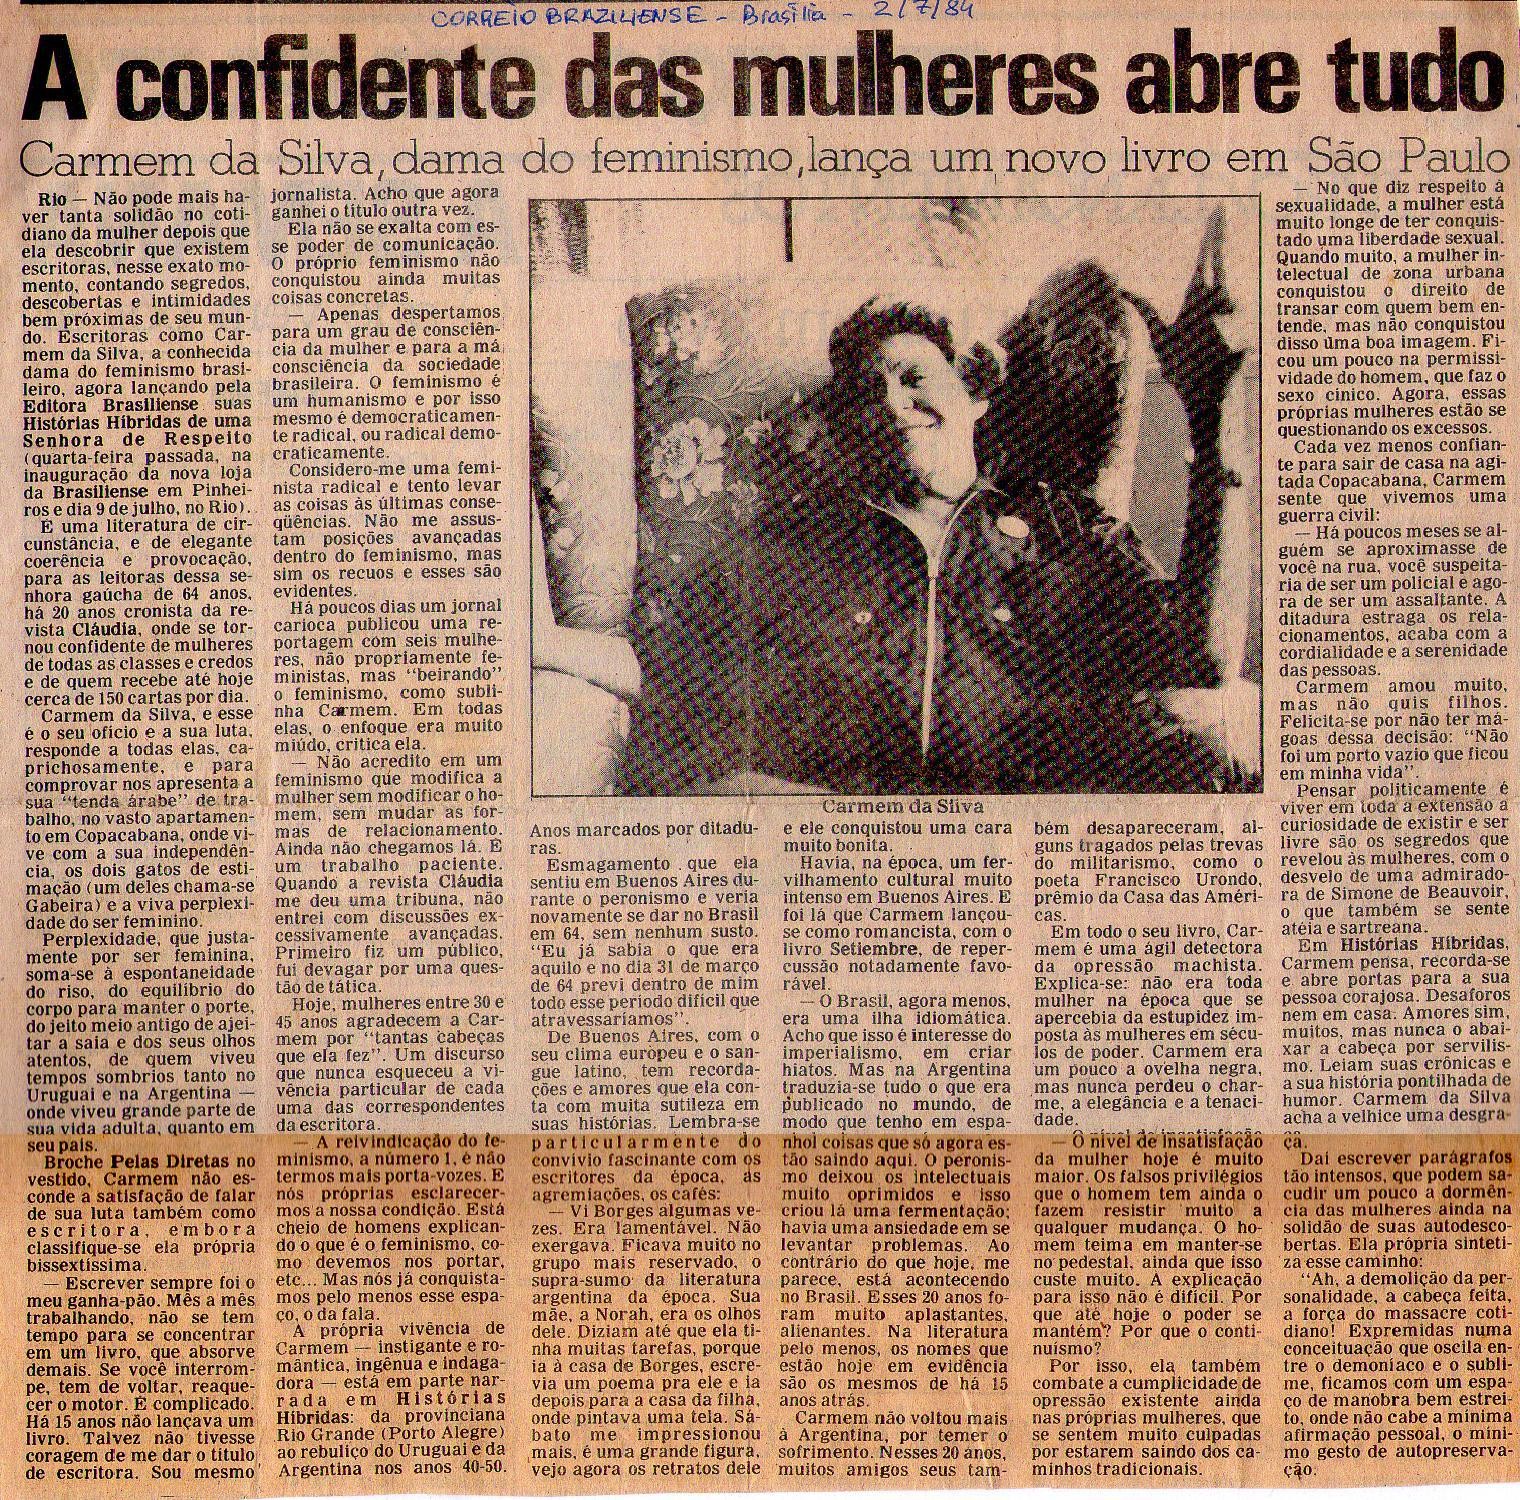 02 de Julho de 1984 - Correio Brasiliense. A confidente das mulheres abre tudo.